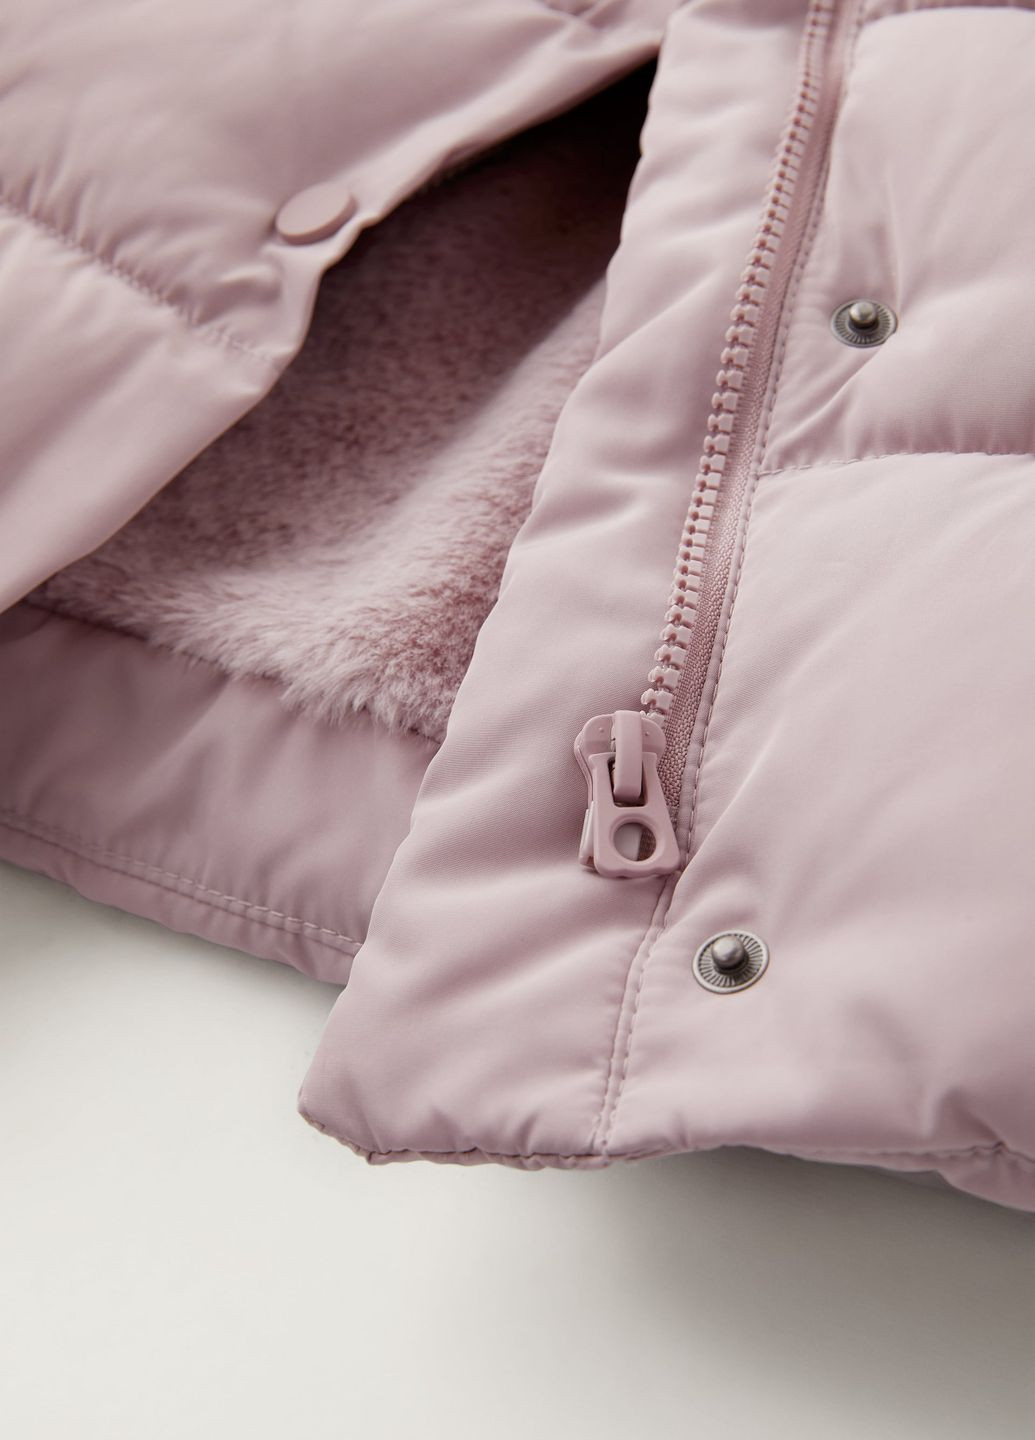 Розовая демисезонная куртка детская Zara